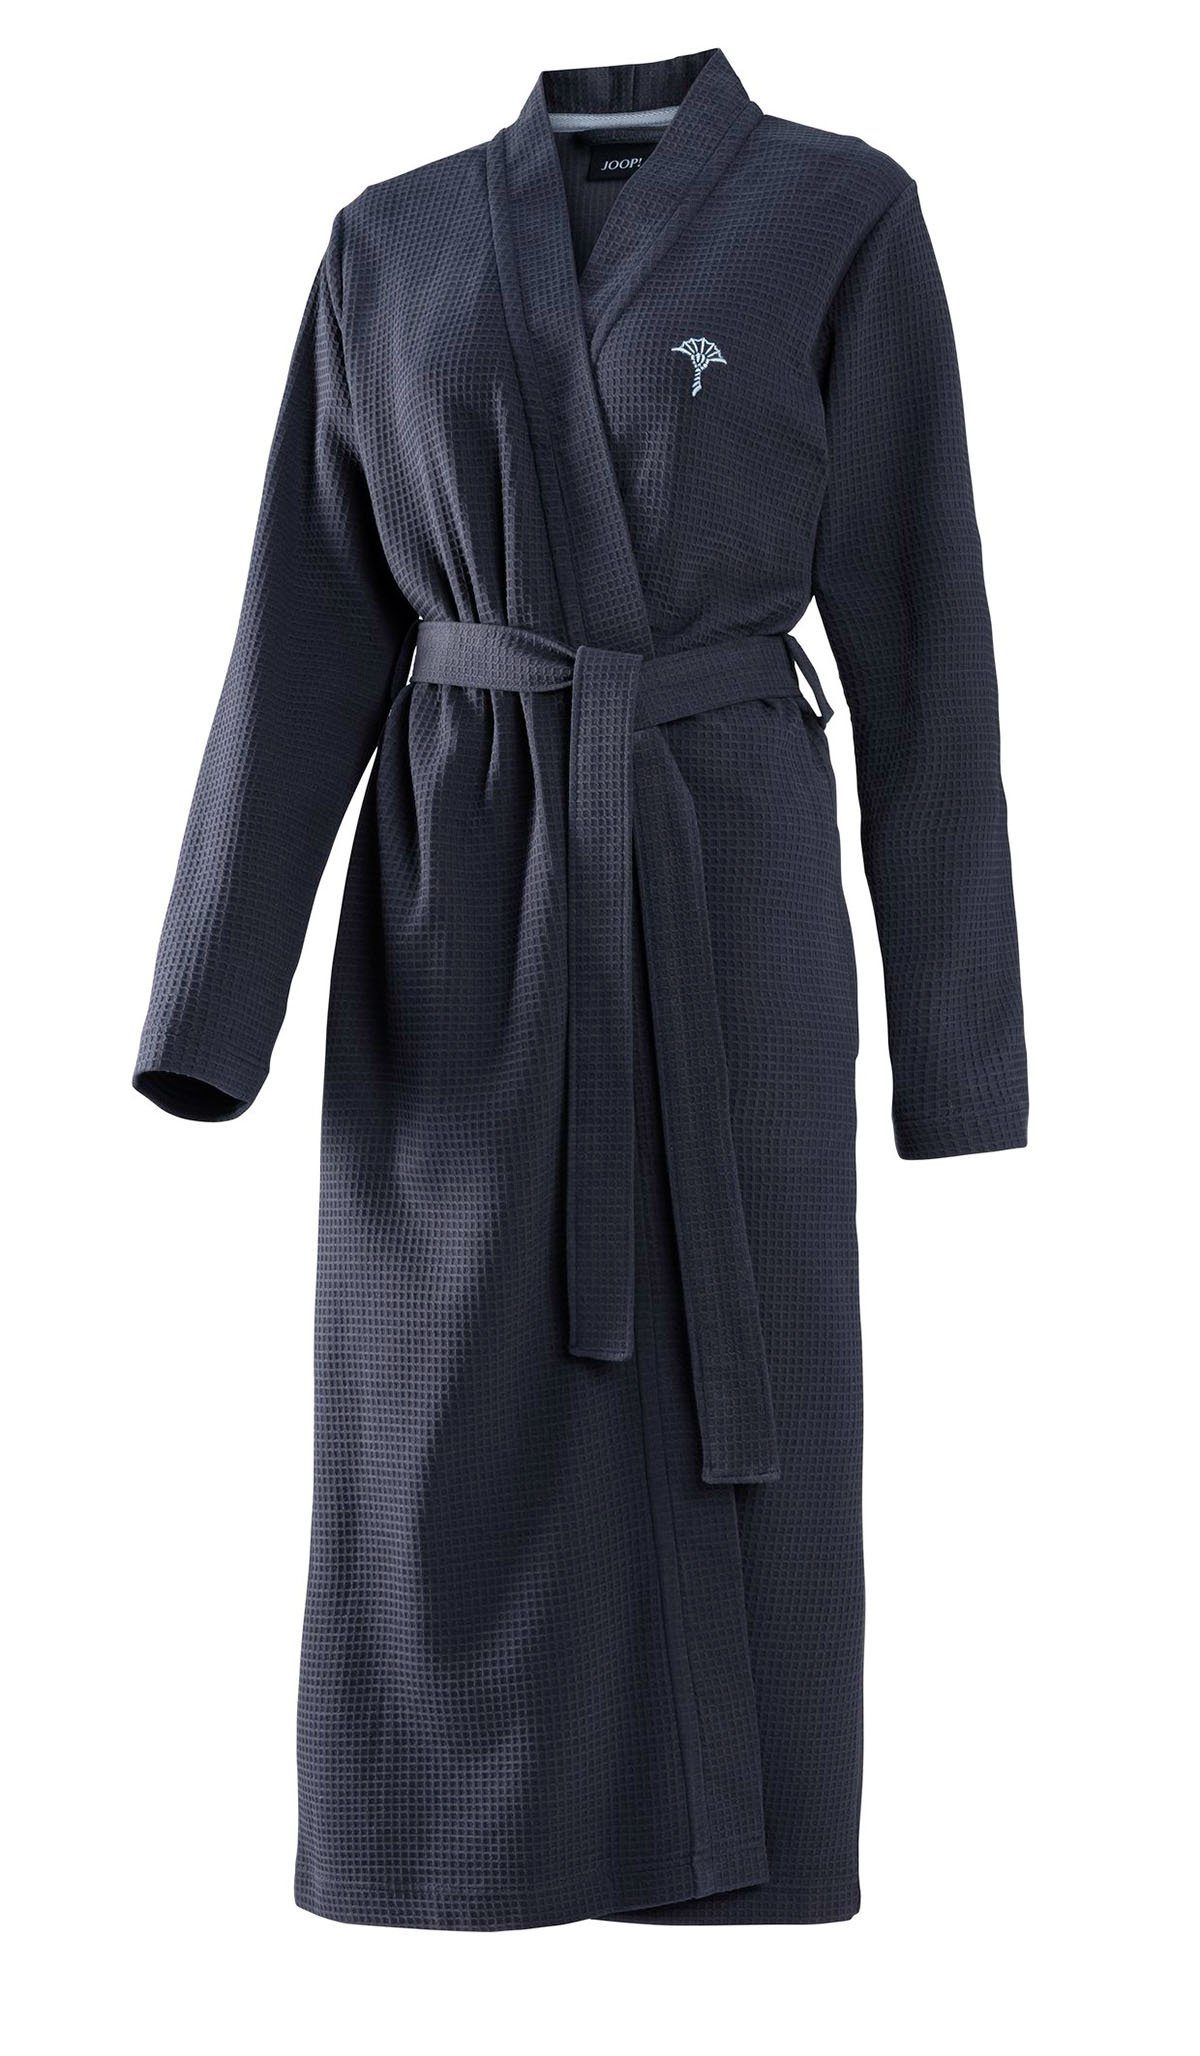 Joop! Damenbademantel Pique 1657 Kimono JOOP! Damen 100% Pique, Bademantel Baumwolle, Kimono, für